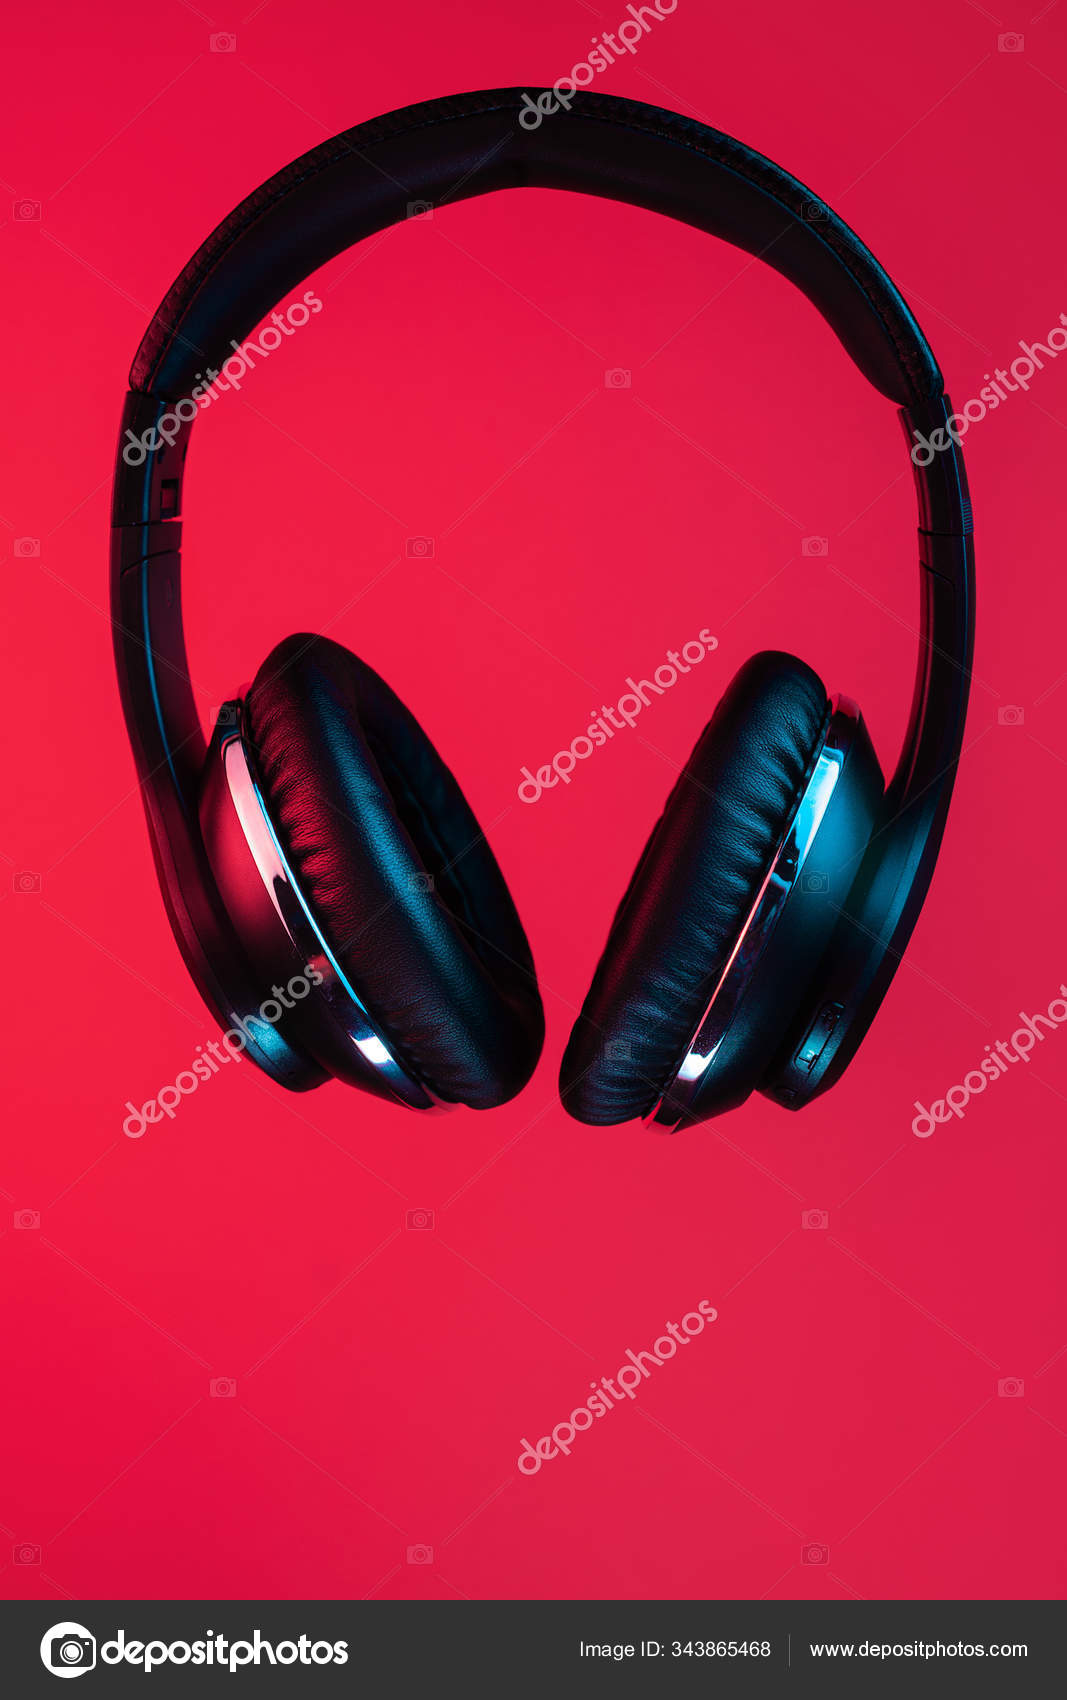 Foto de estilo retro 90s de auriculares inalámbricos modernos con estilo  negro en luces de neón sobre fondo rojo .: fotografía de stock © sklyareek  #343865468